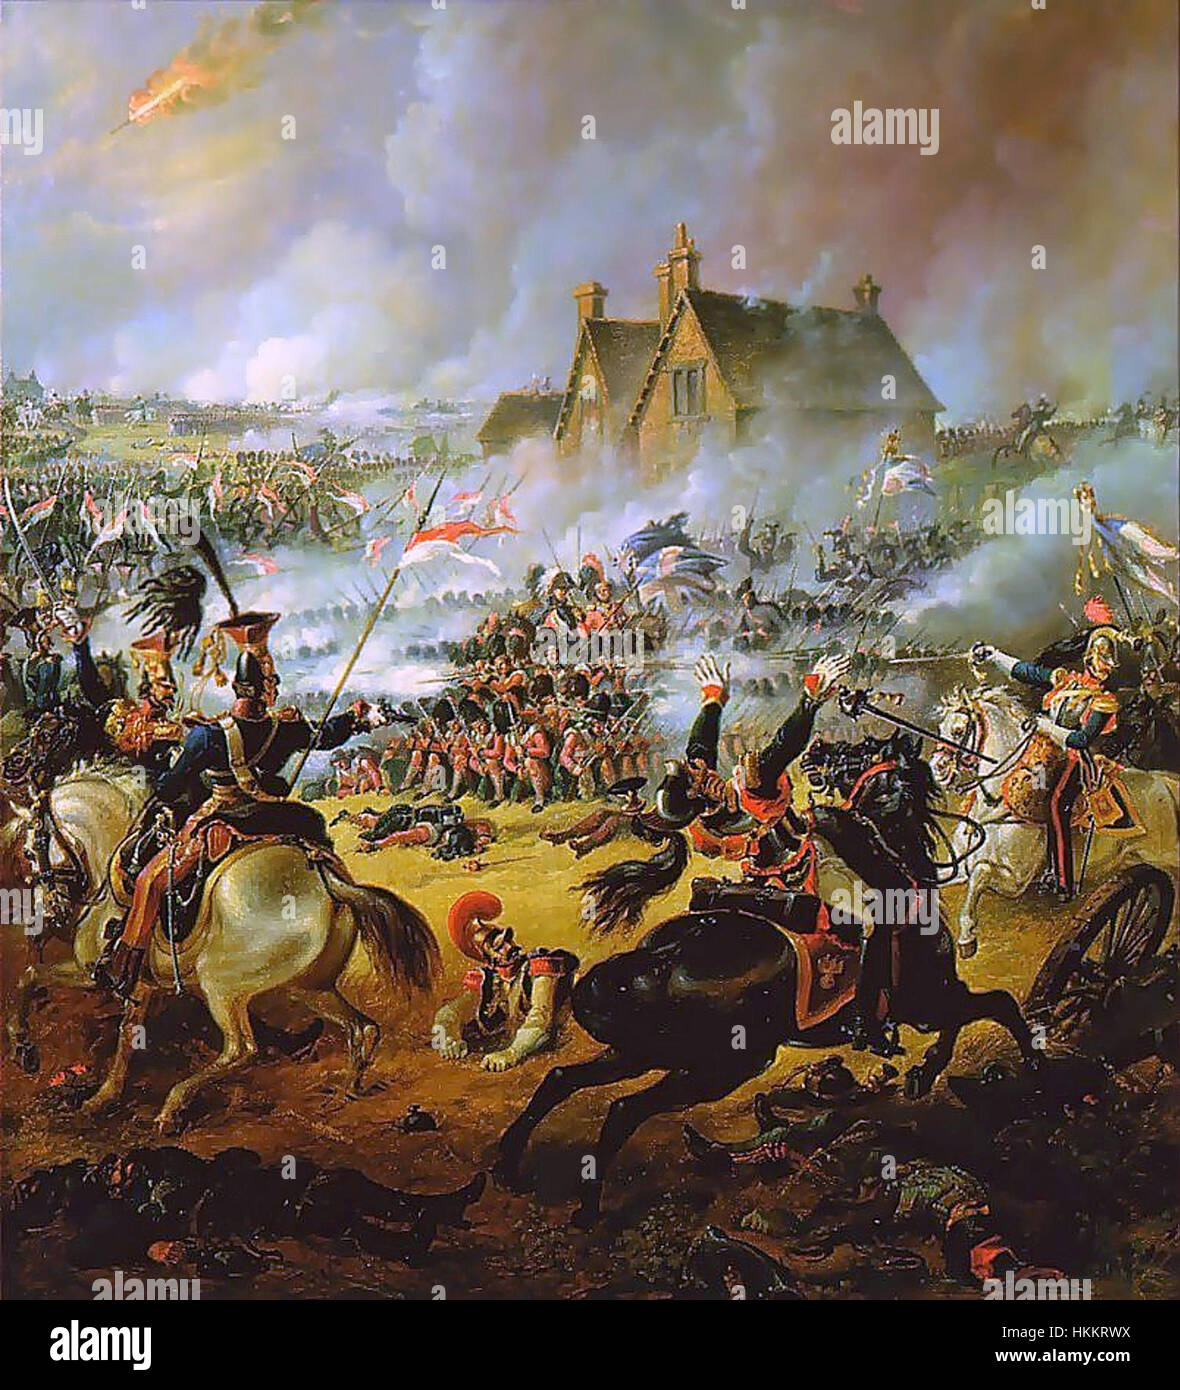 Битва с наполеоном год. 18 Июня 1815 г. - битва при Ватерлоо. Наполеон битва Ватерлоо. Битва Ватерлоо 1815. Ватерлоо битва Наполеона картина 1815.